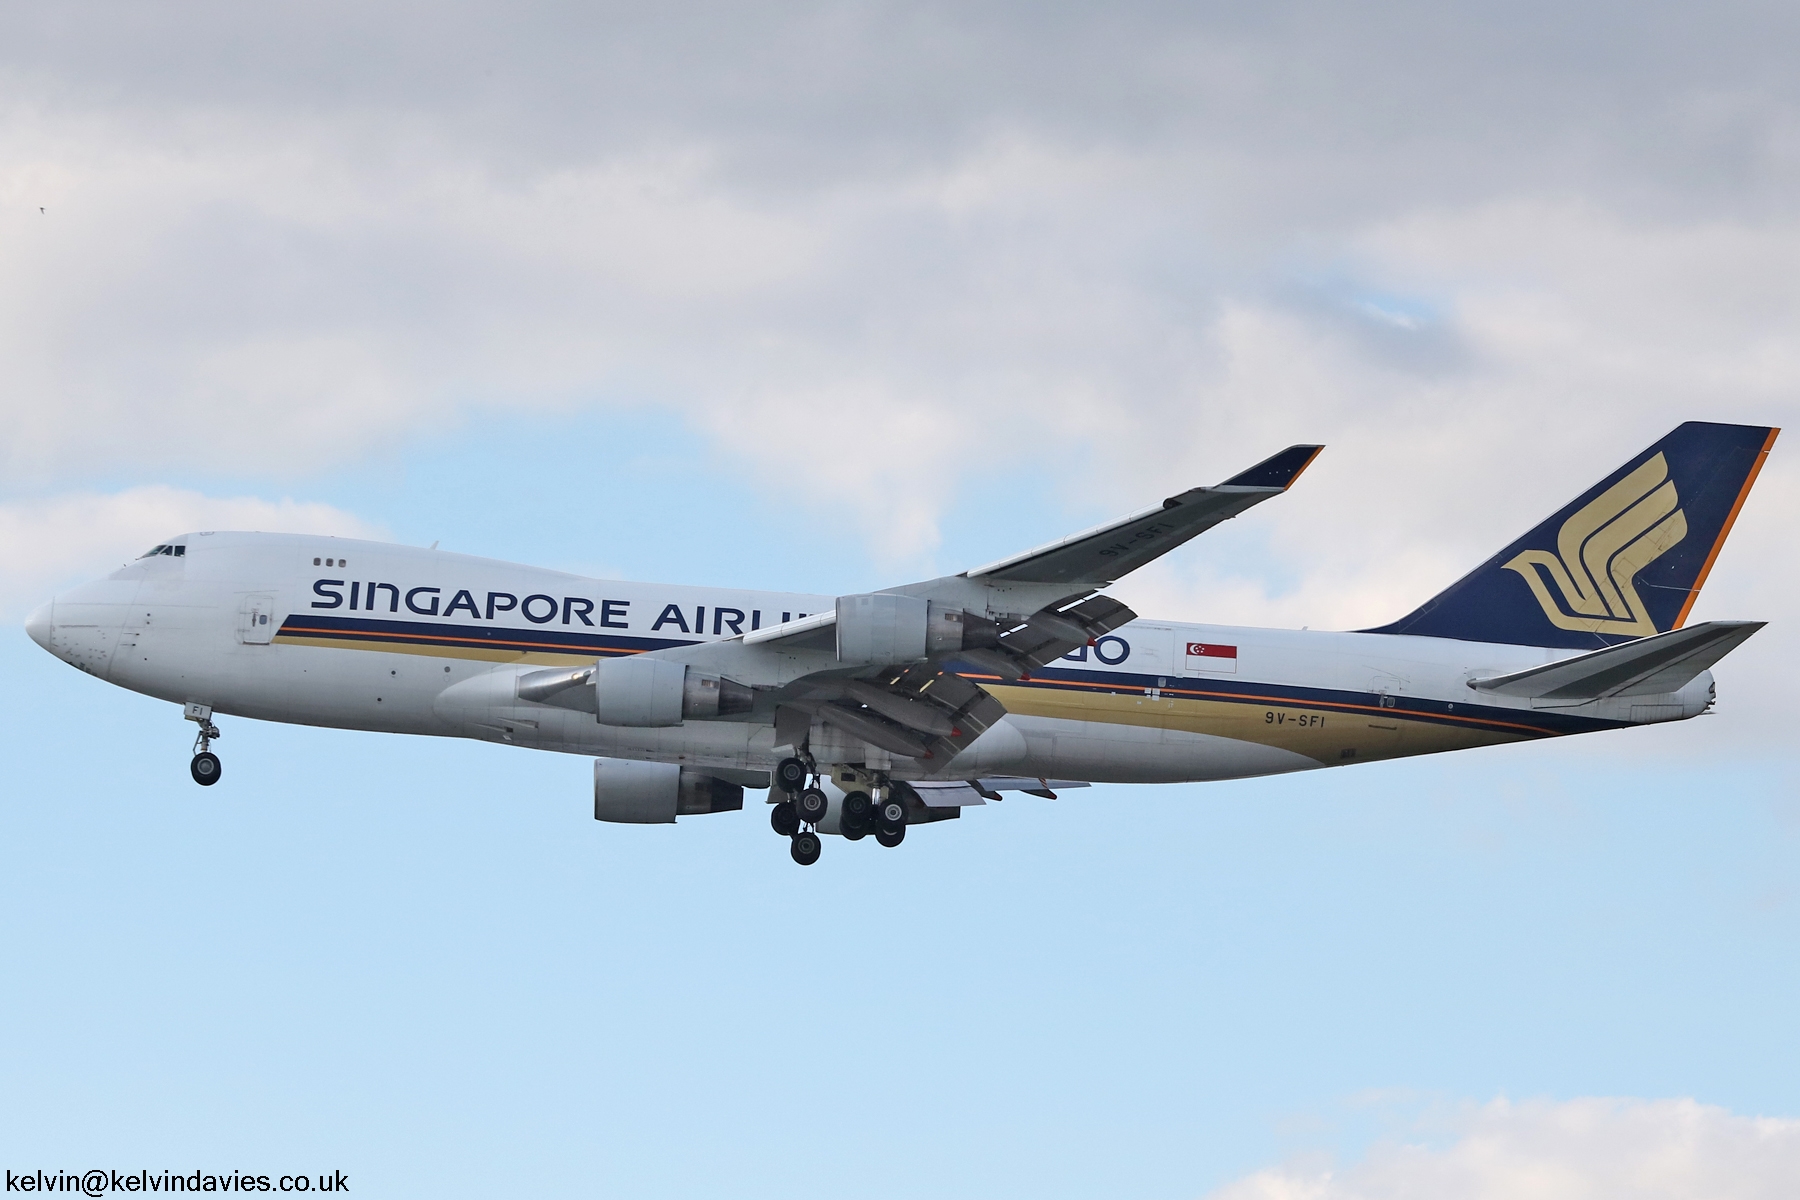 Singapore Airlines 747 9V-SFI